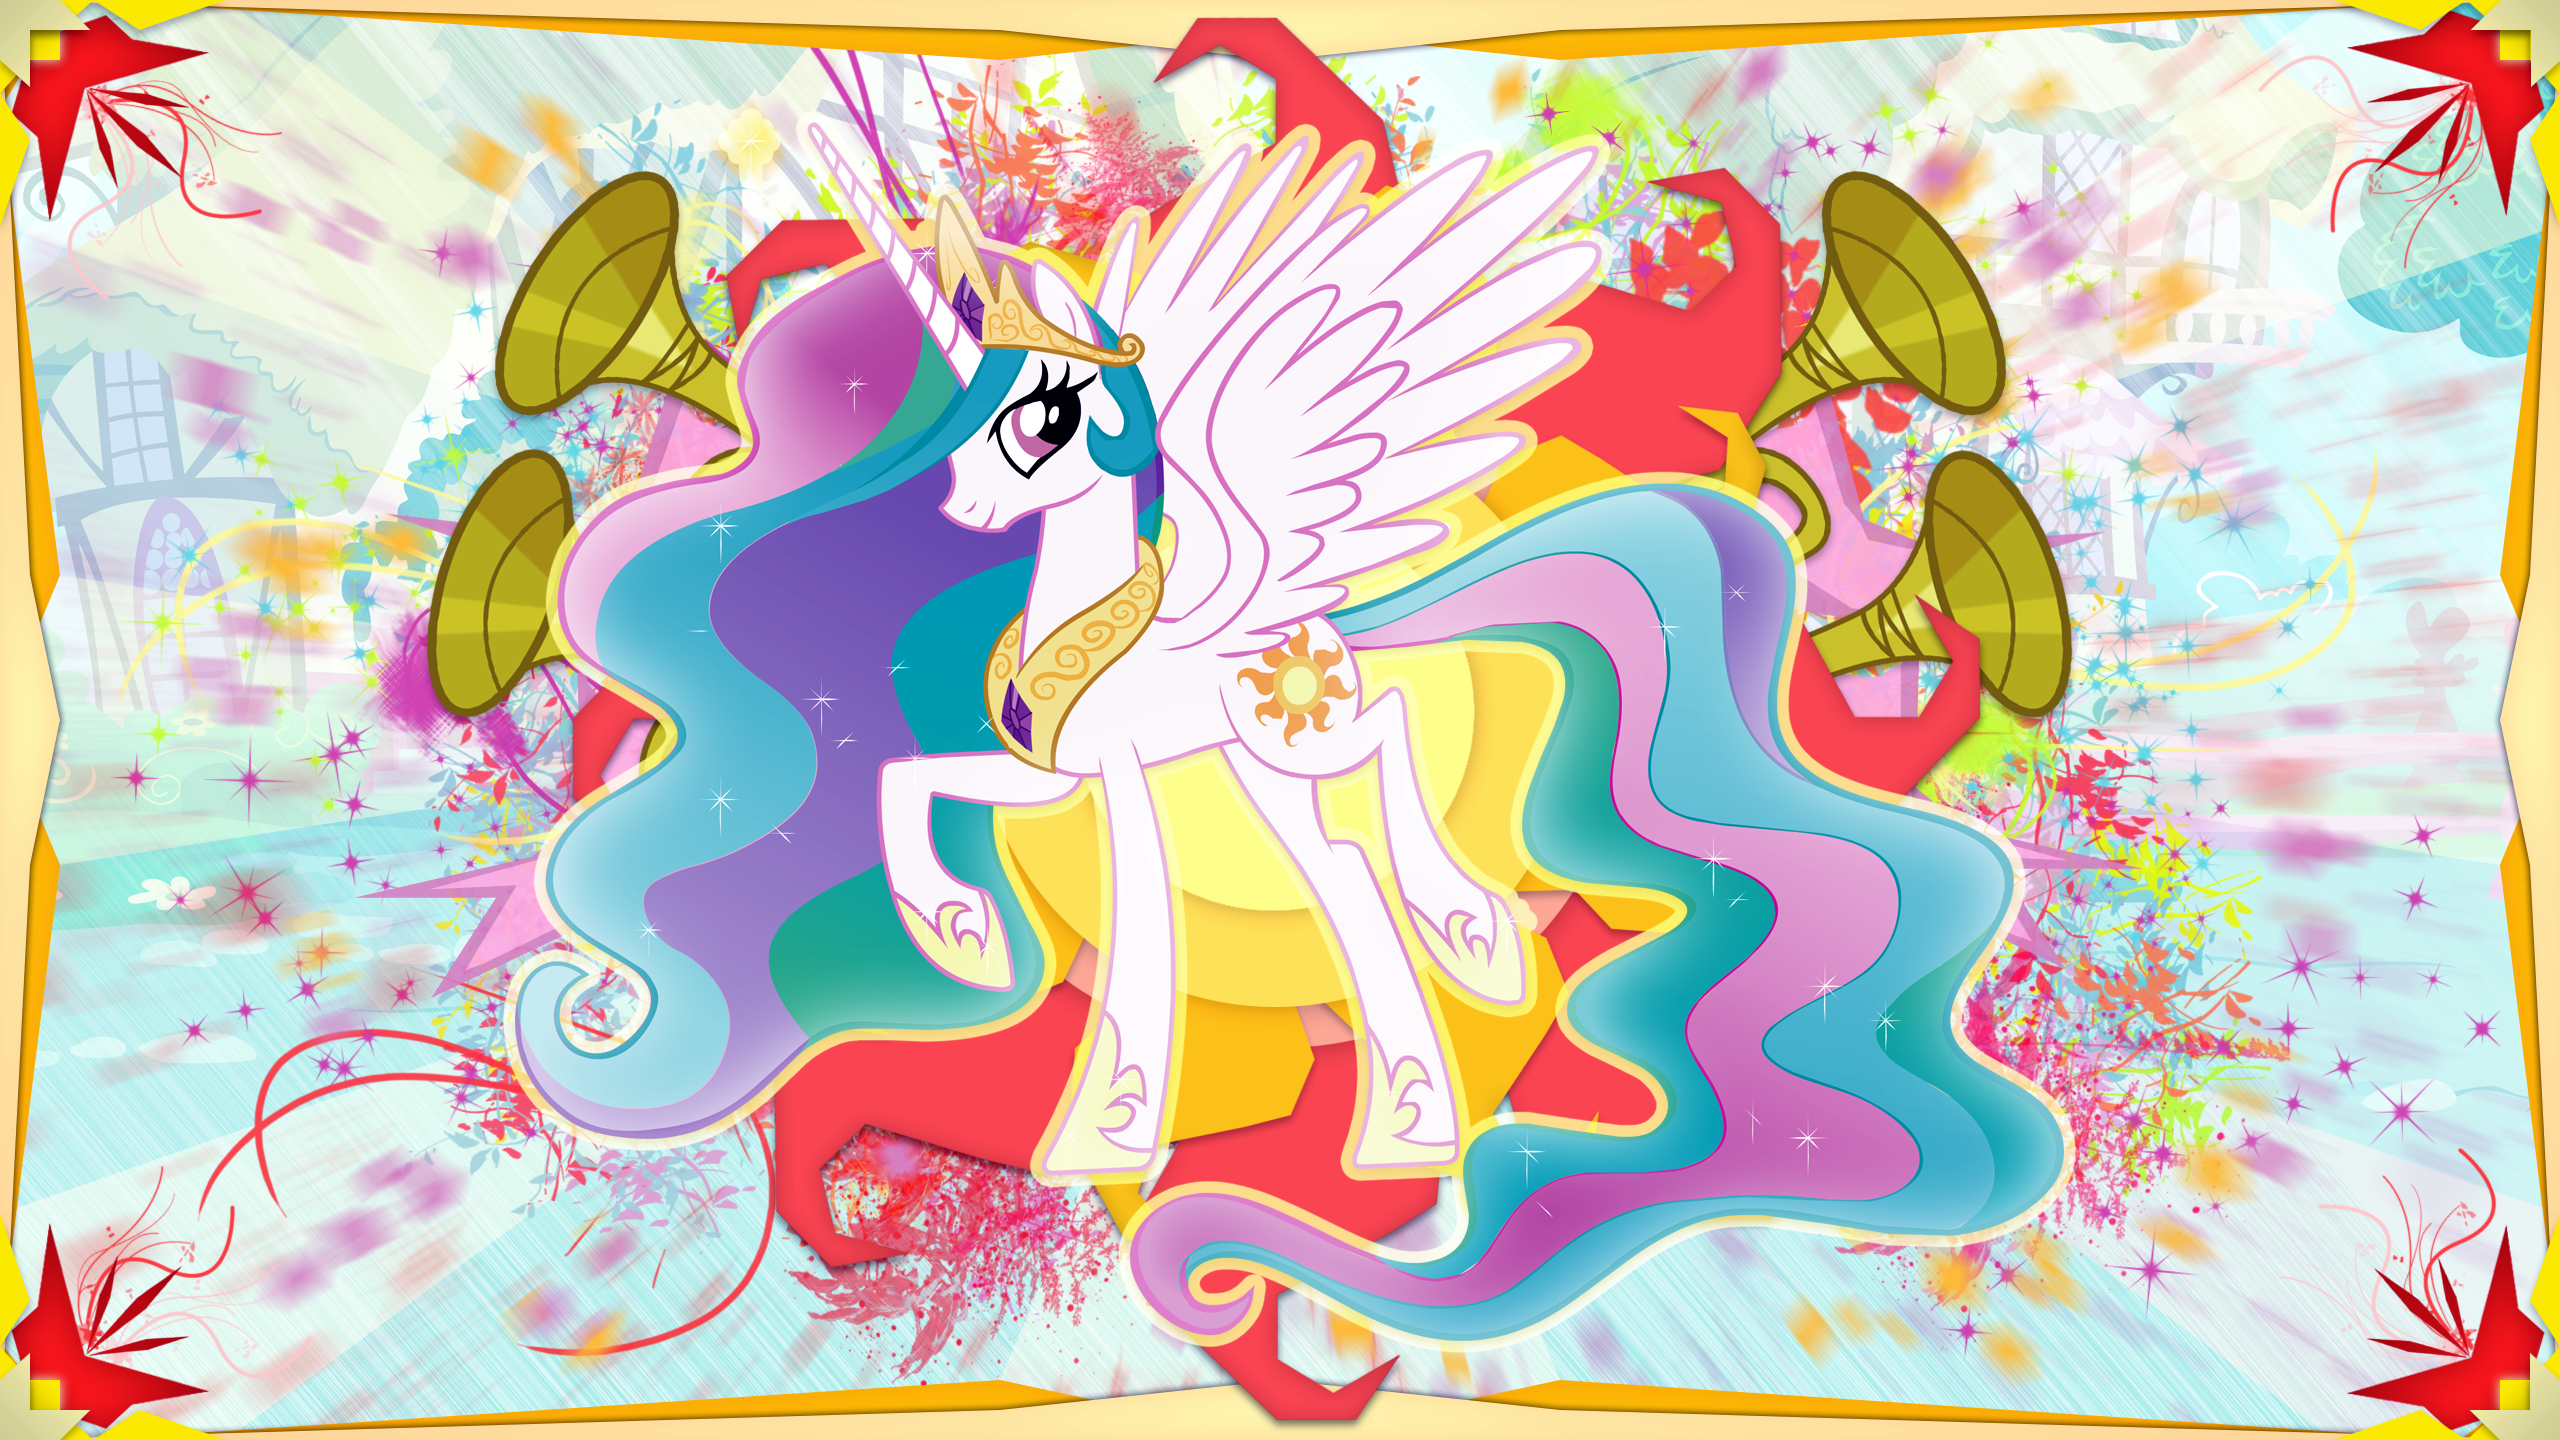 Princess Celestia wallpaper by skrayp